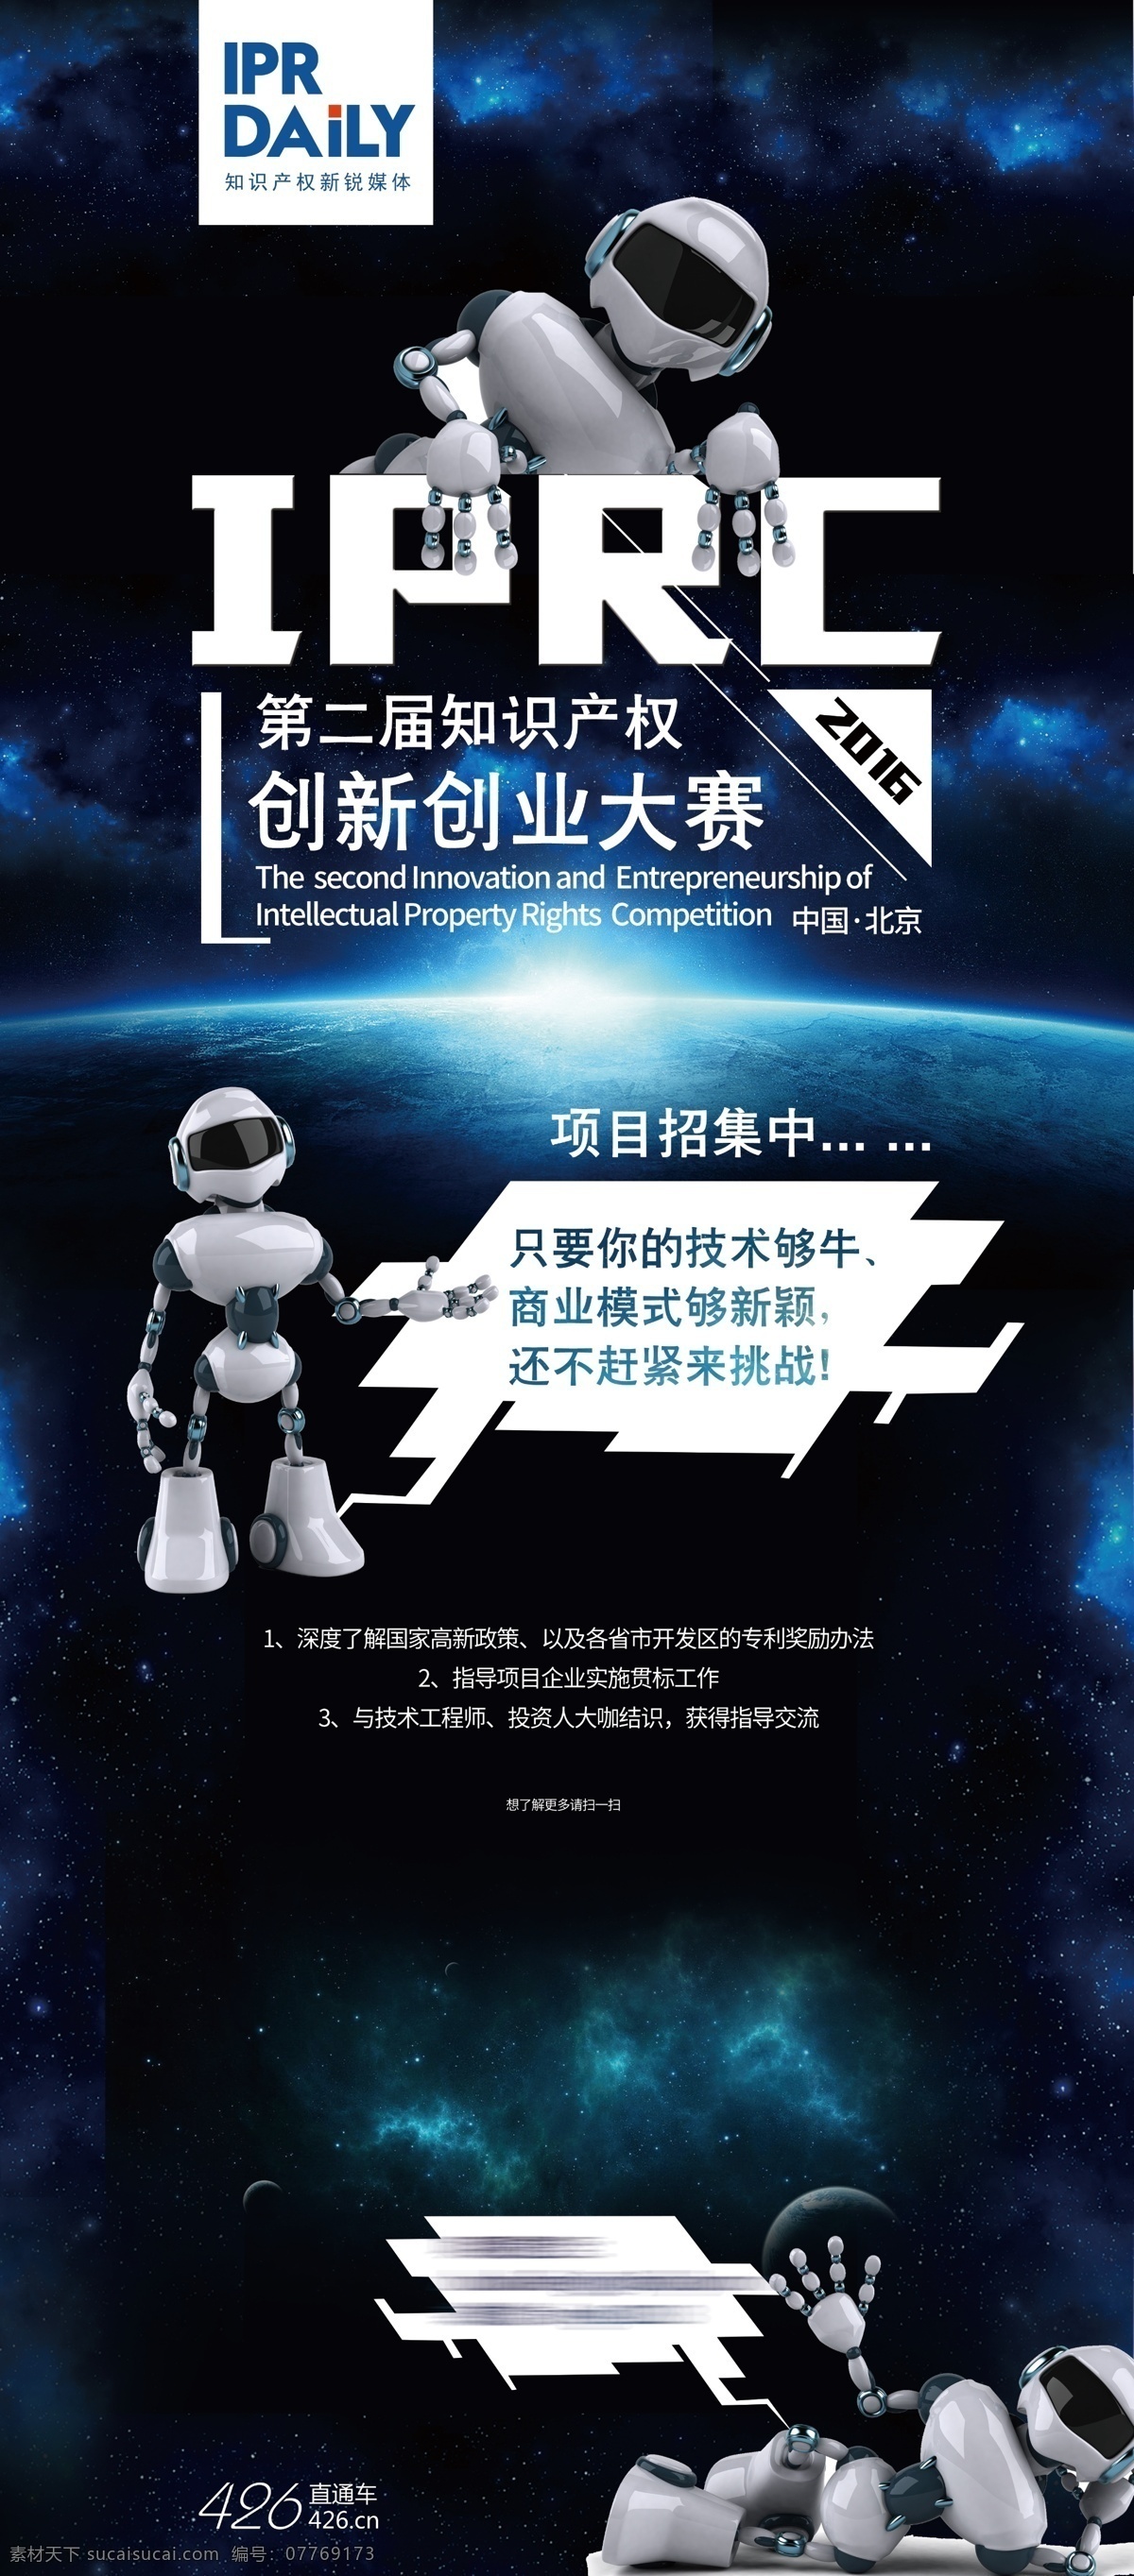 机器人海报 机器人展架 机器人传单 机器人 星空宇宙背景 太空 机器人广告 机器人易拉宝 科技展架 科技易拉宝 x展架